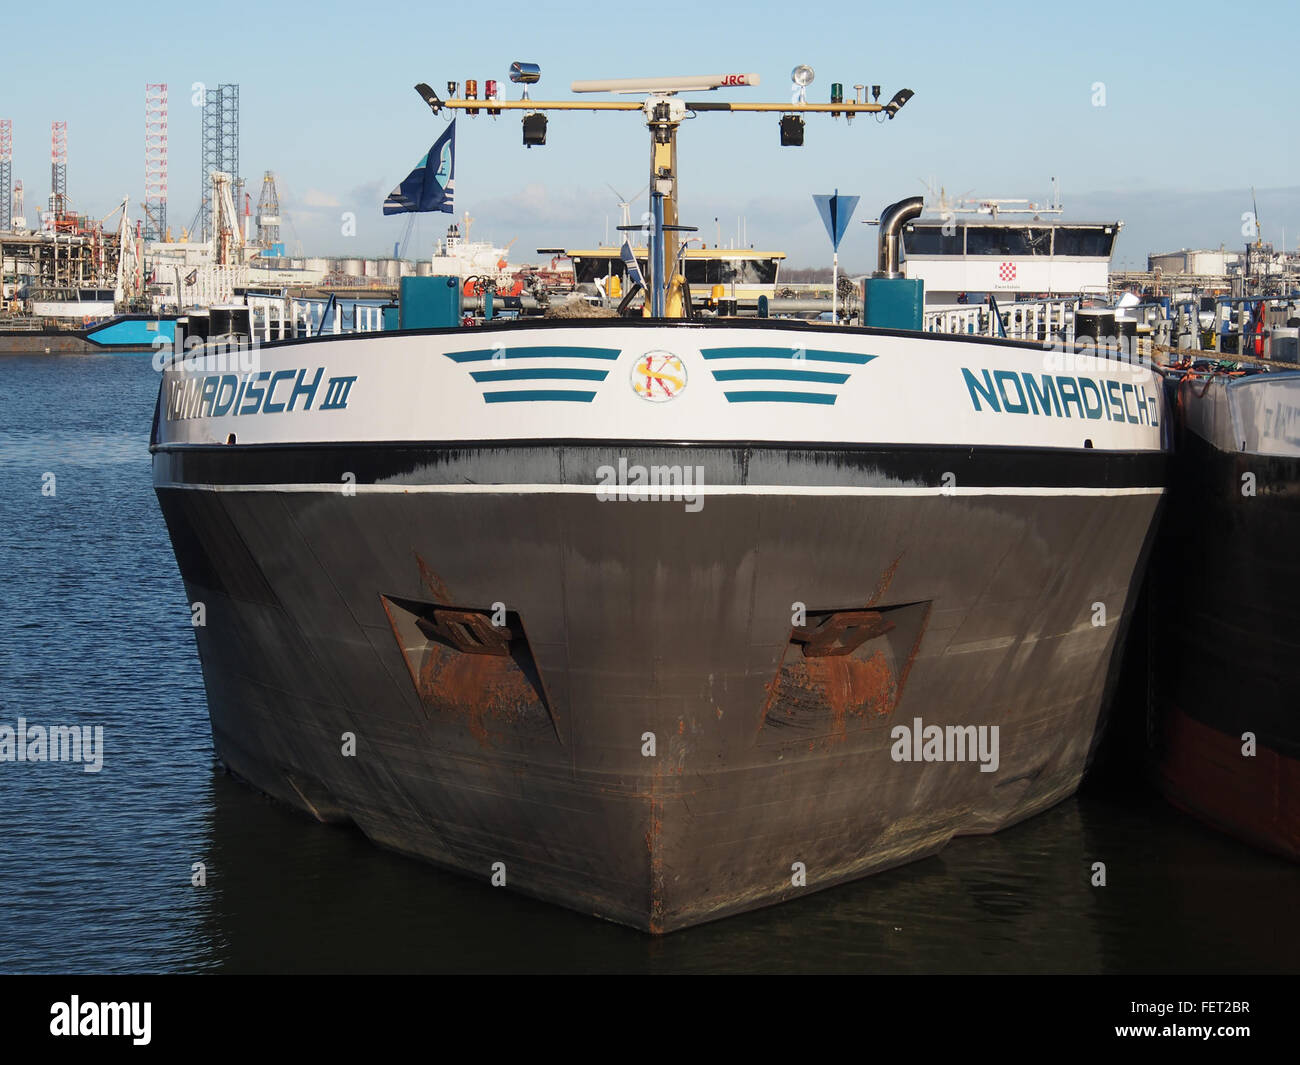 Nomadisch III (nave, 2009) ENI 02333357 porto di Rotterdam pic1 Foto Stock